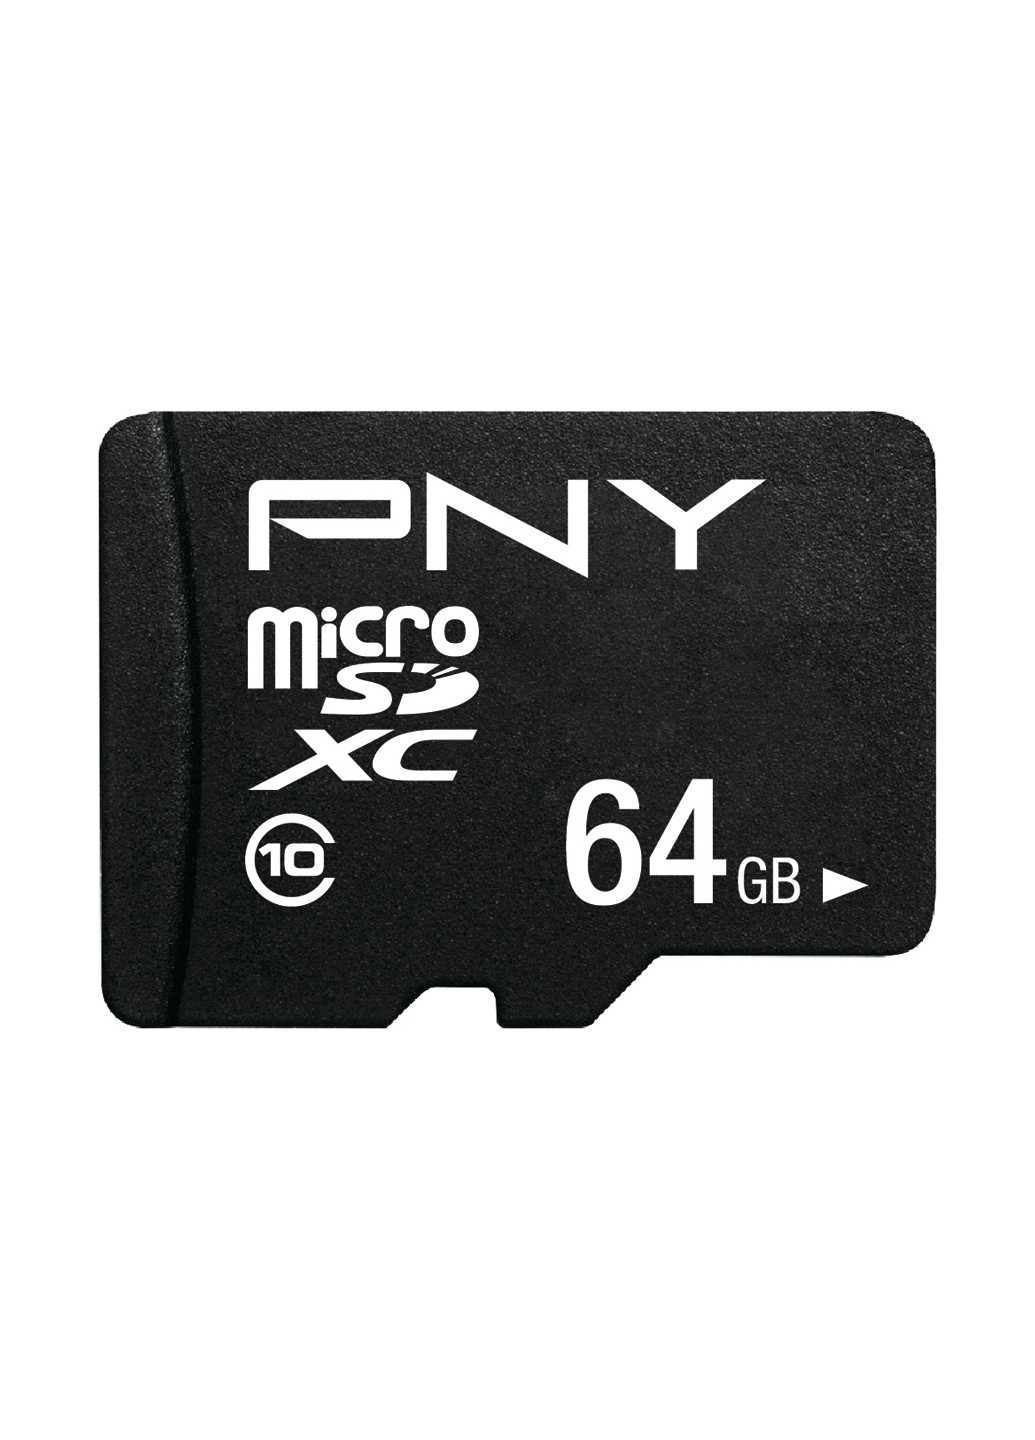 Карта памяти microSDXC Performance Plus 64G C10 UHS-I + SD-adapter (P-SDU64G10PPL-GE) PNY карта памяти pny microsdxc performance plus 64g c10 uhs-i + sd-adapter (p-sdu64g10ppl-ge) (135511867)